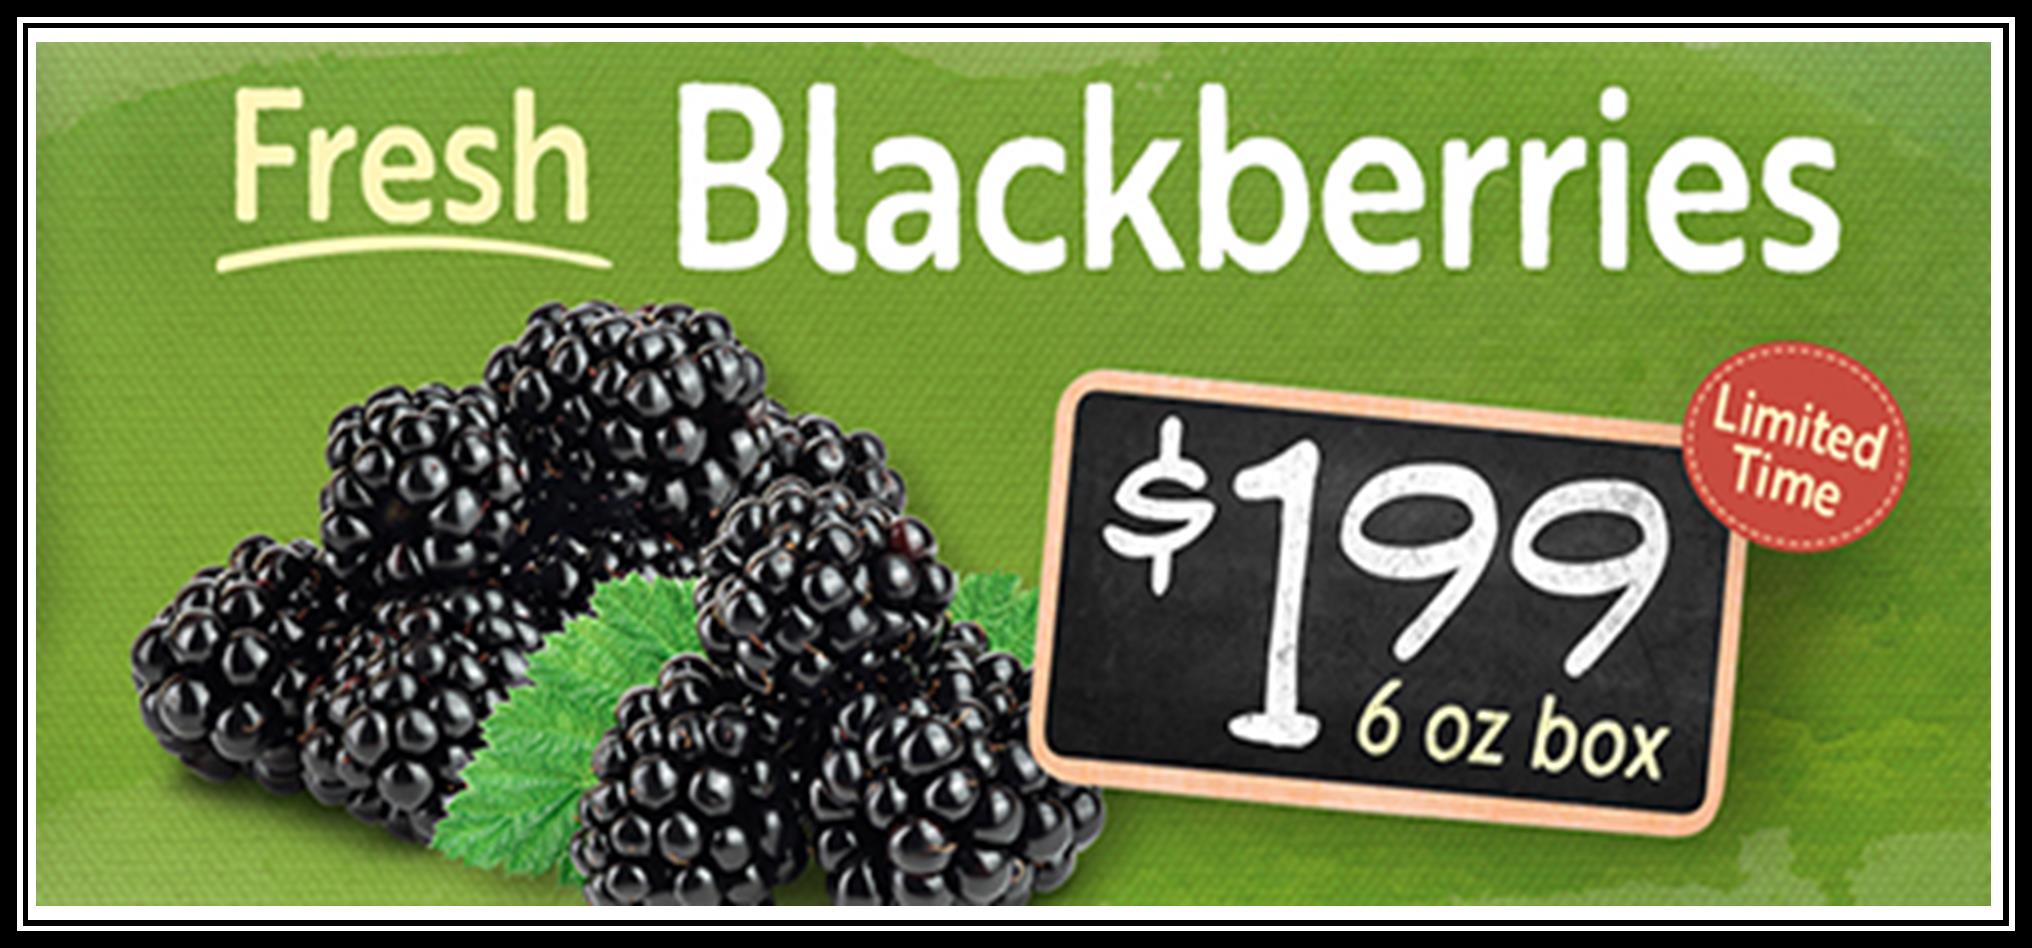 Blackberries 199.jpg